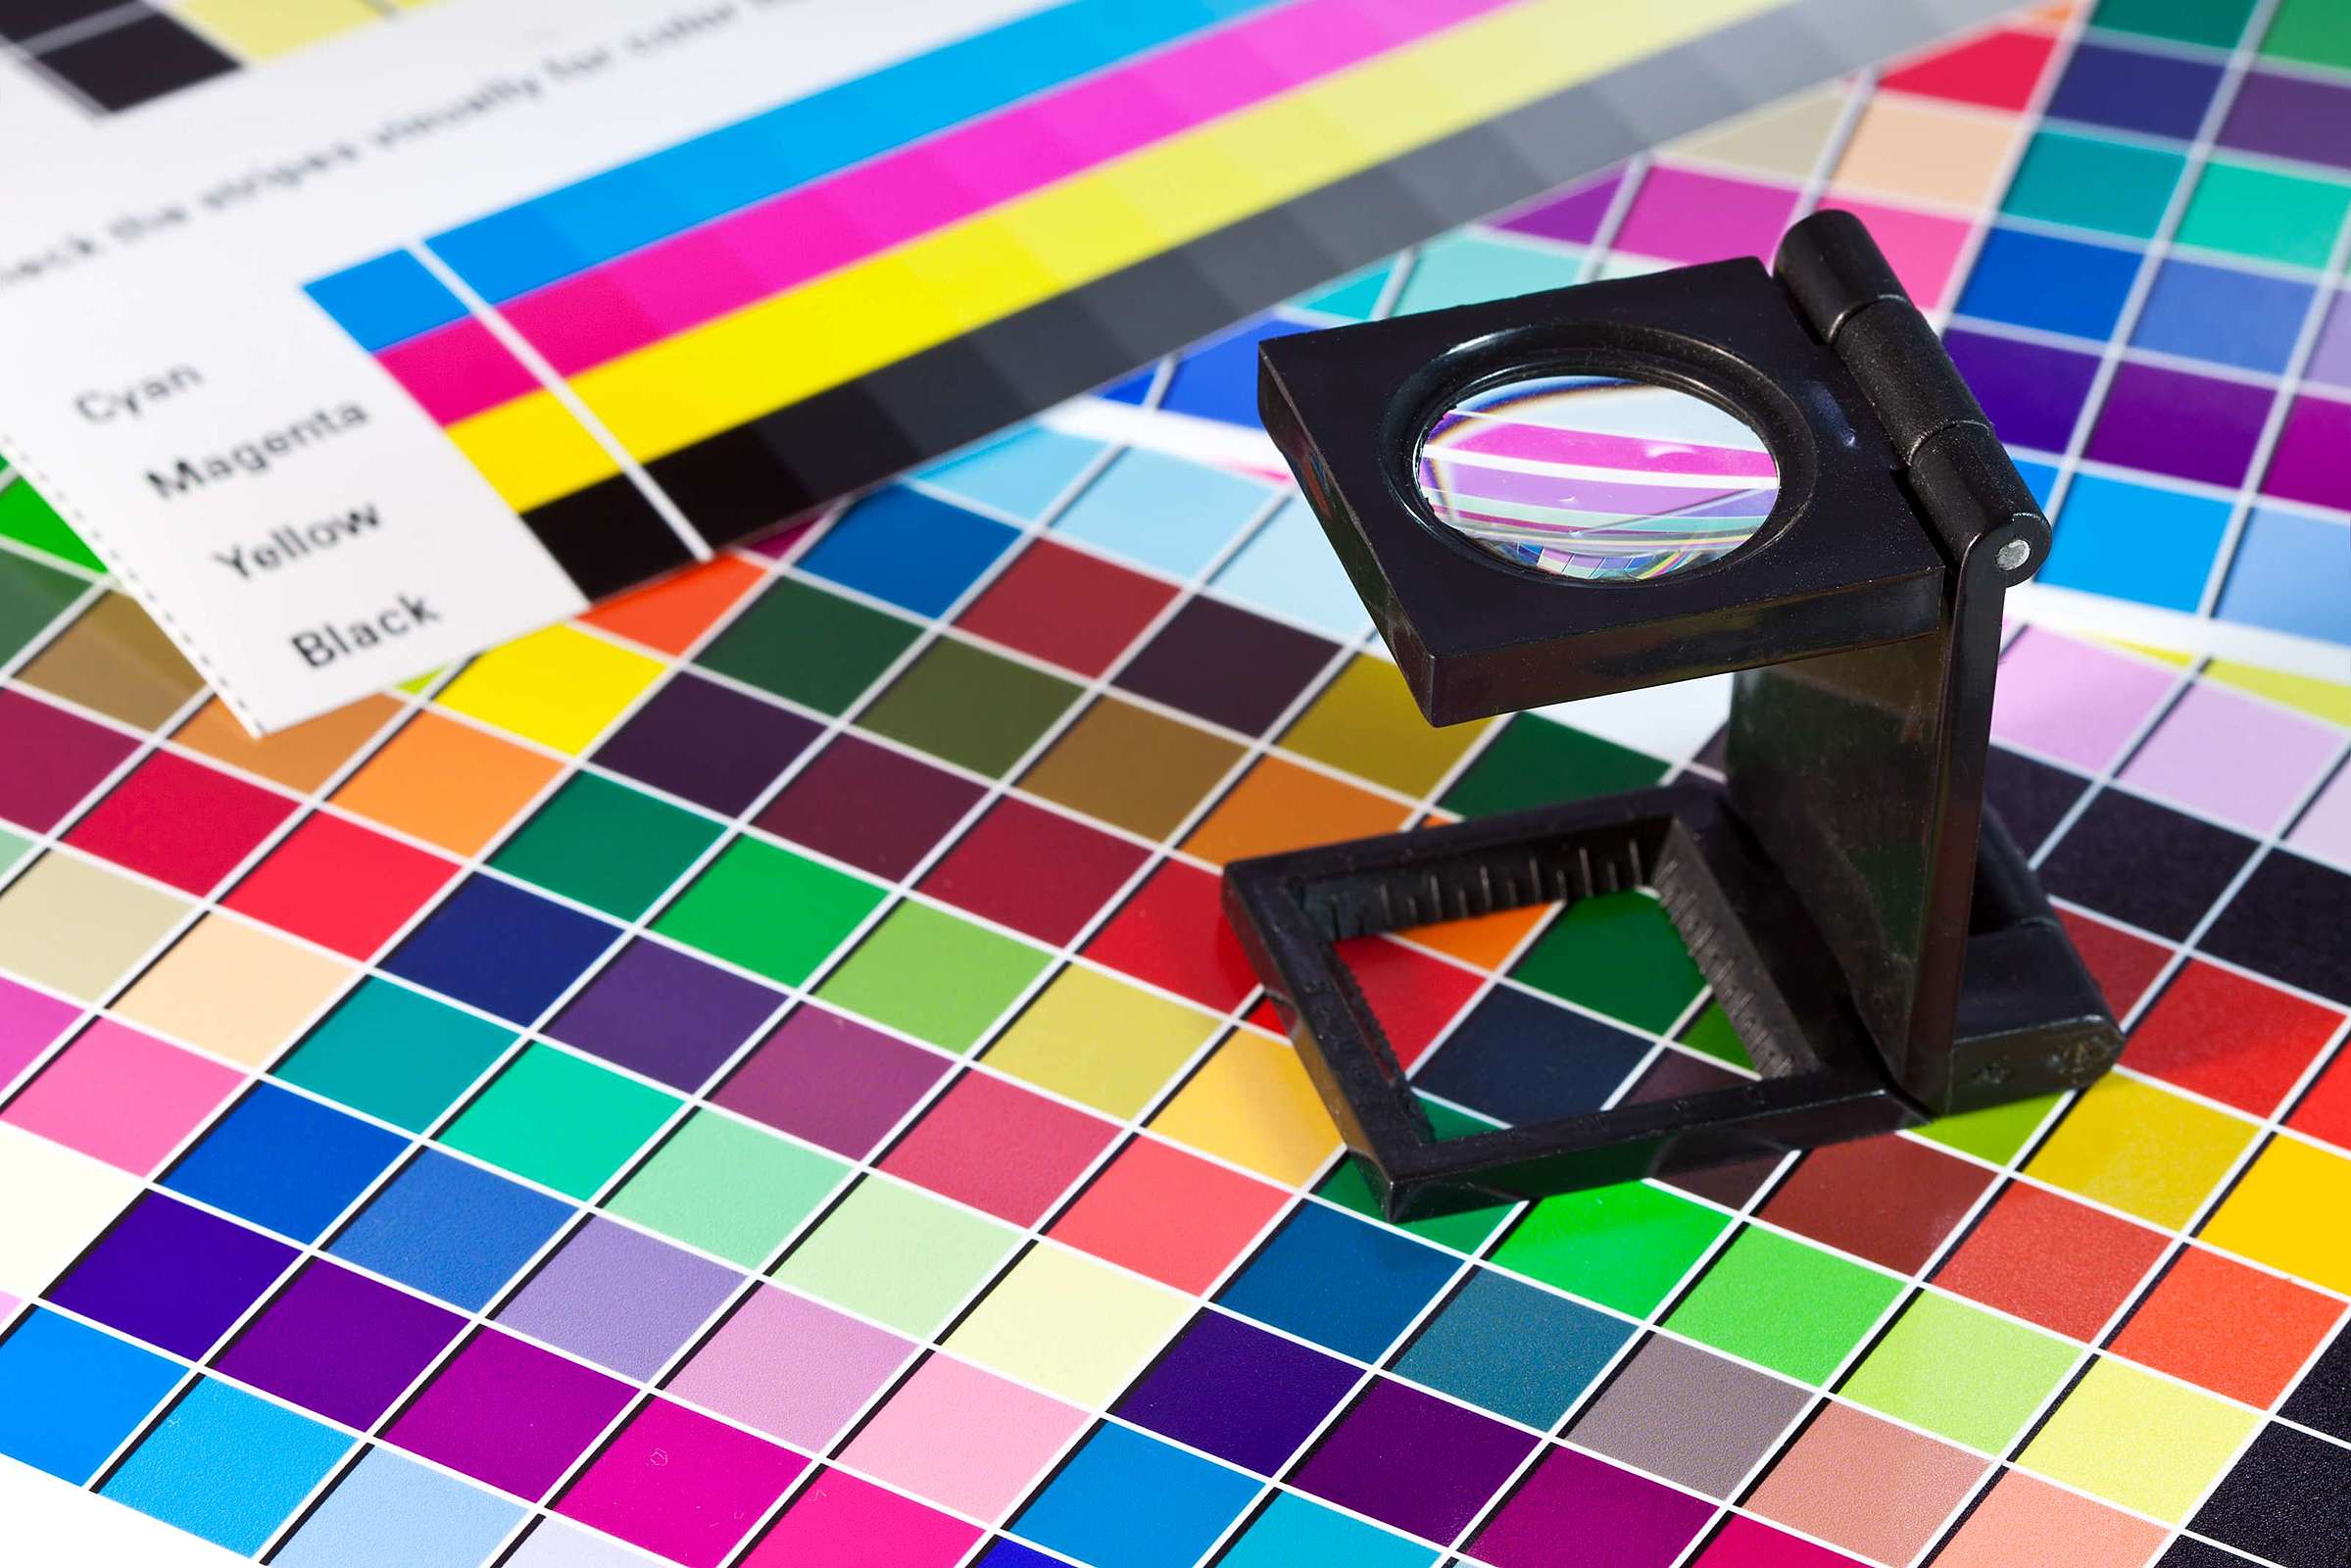 Pantone, CMYK e RGB - os diferentes sistemas de cores - Gráfica Forma Certa